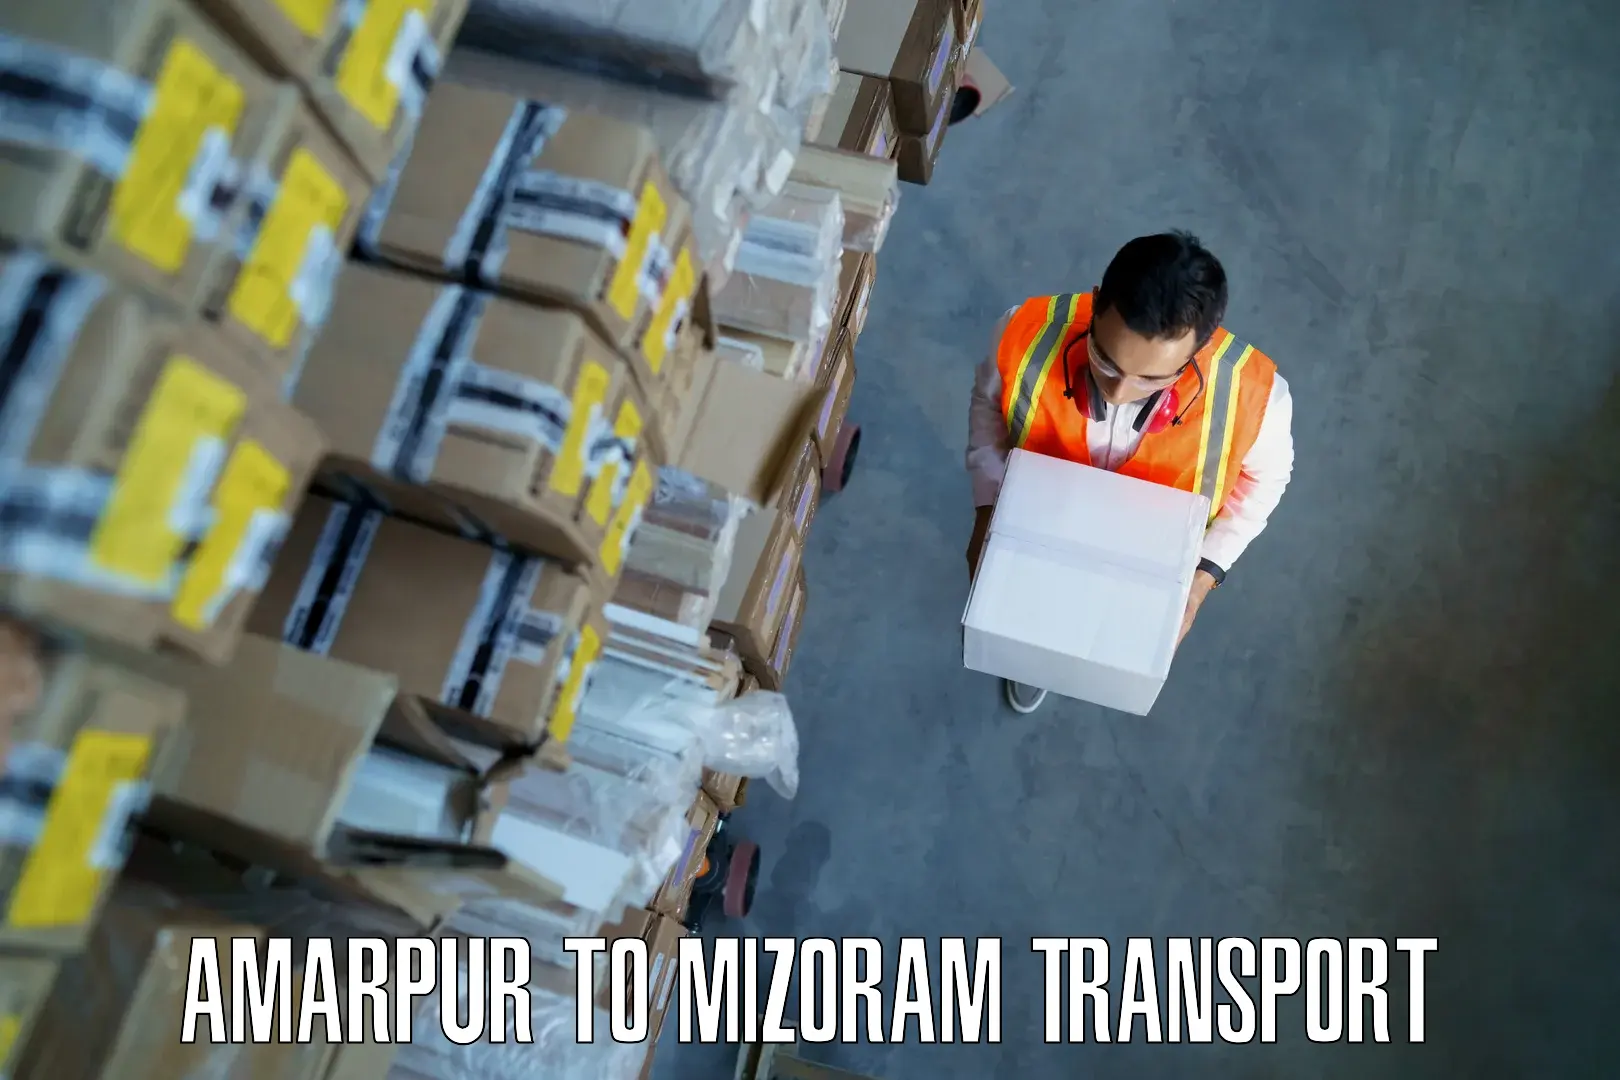 Interstate goods transport in Amarpur to Darlawn